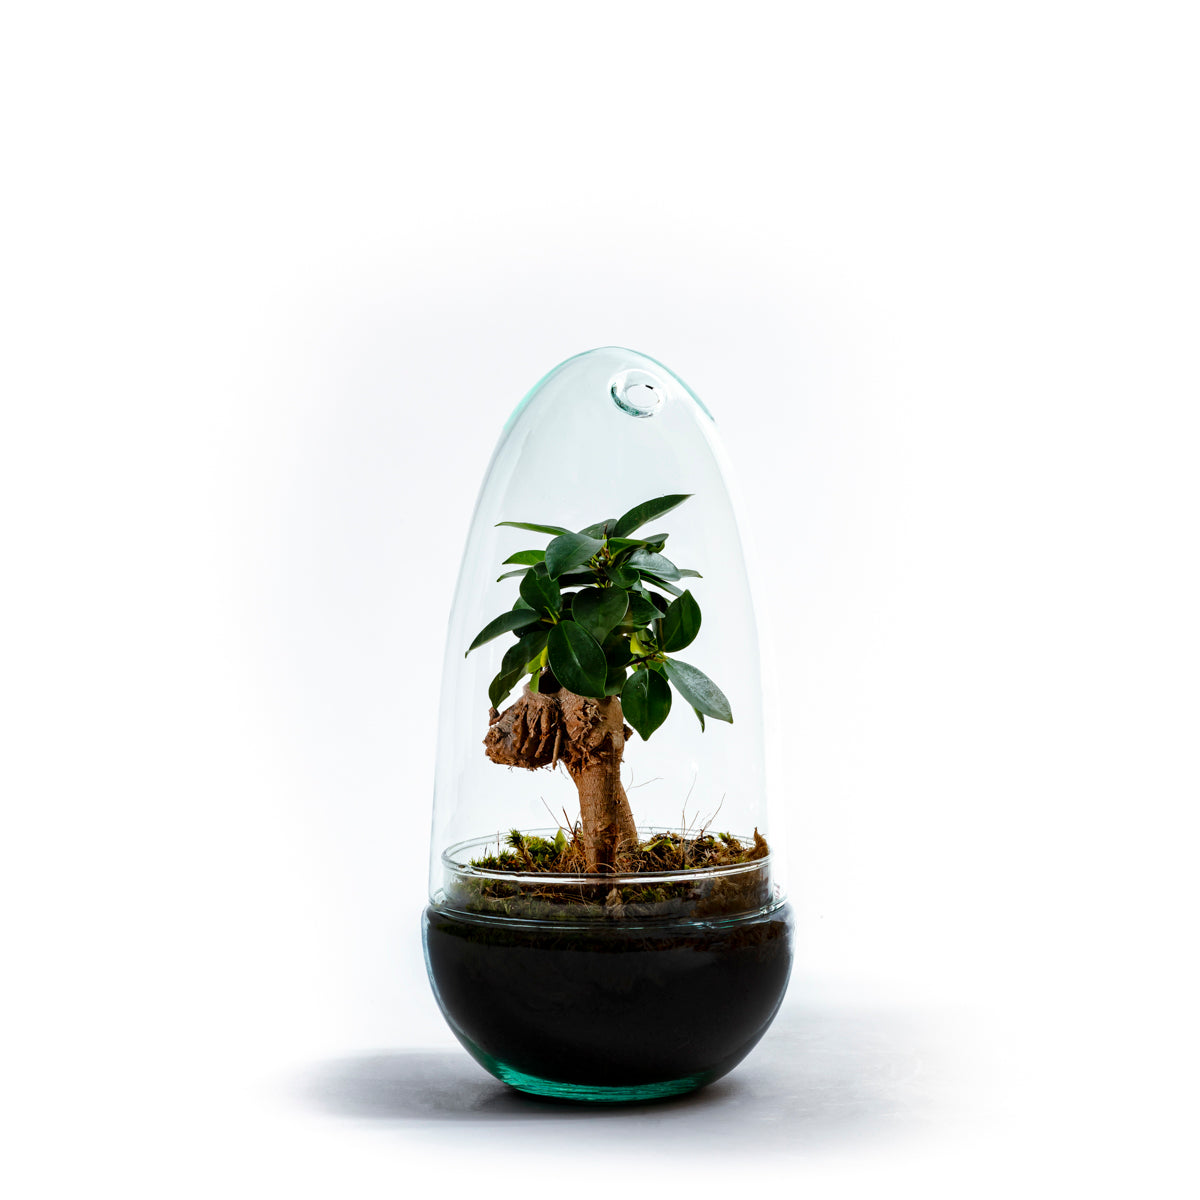 gondozasmentes gondozásmentes díszüveg díszuveg szobanoveny szobanövény dísznövény disznoveny terrarium terrárium florarium florárium ginseng ficus ginzeng fikusz bonsai 